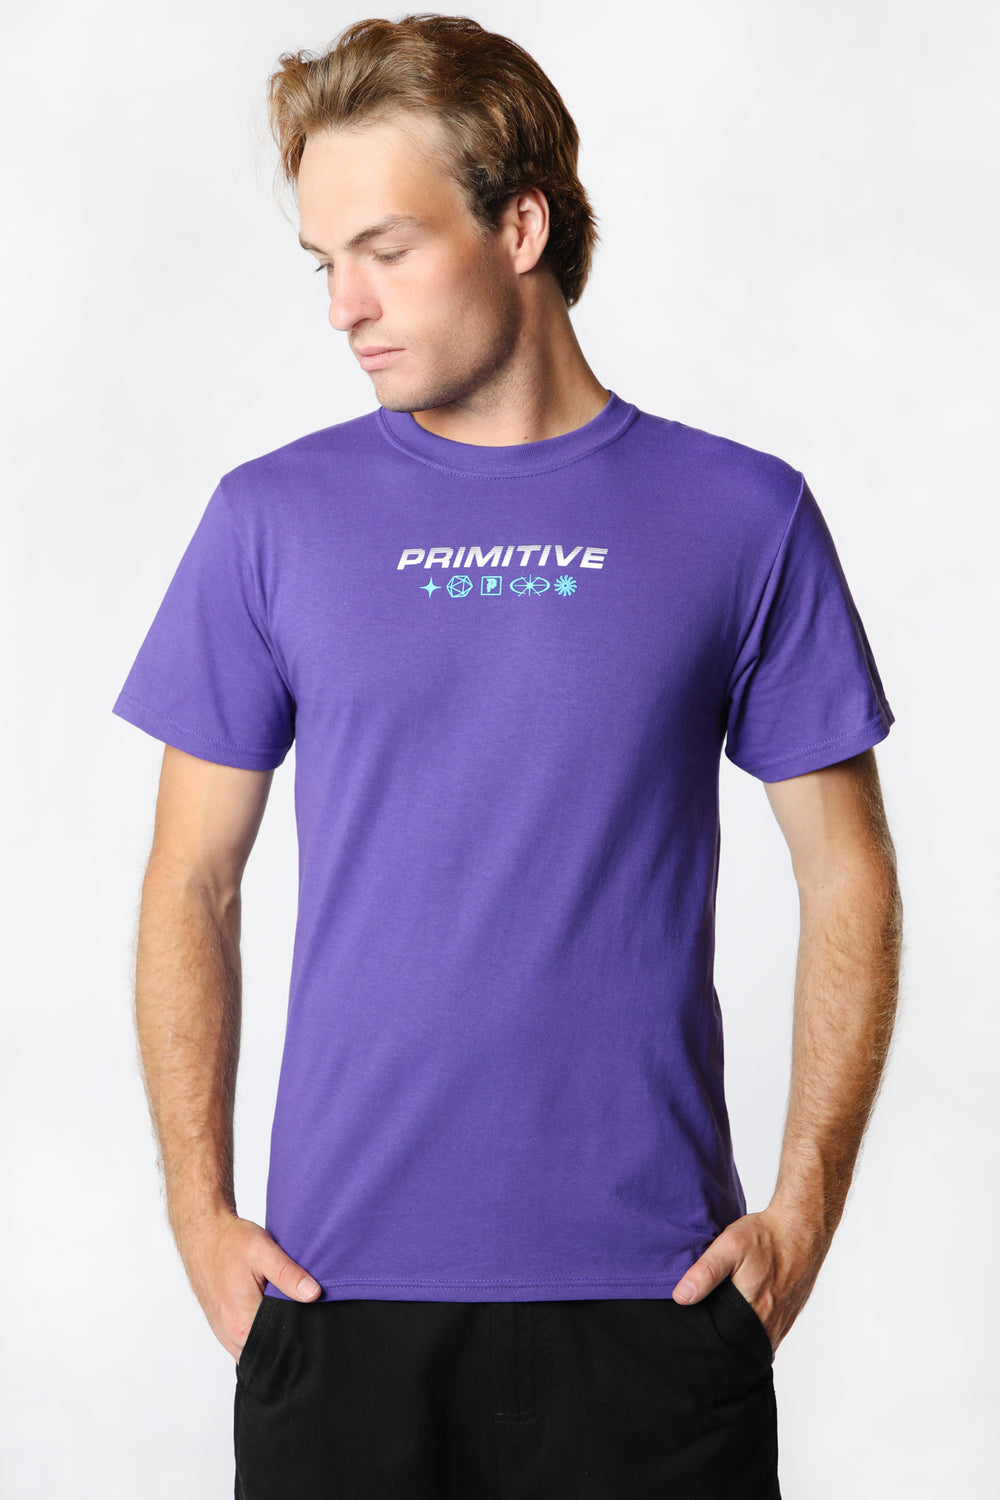 Primitive Zenith T-Shirt Primitive Zenith T-Shirt